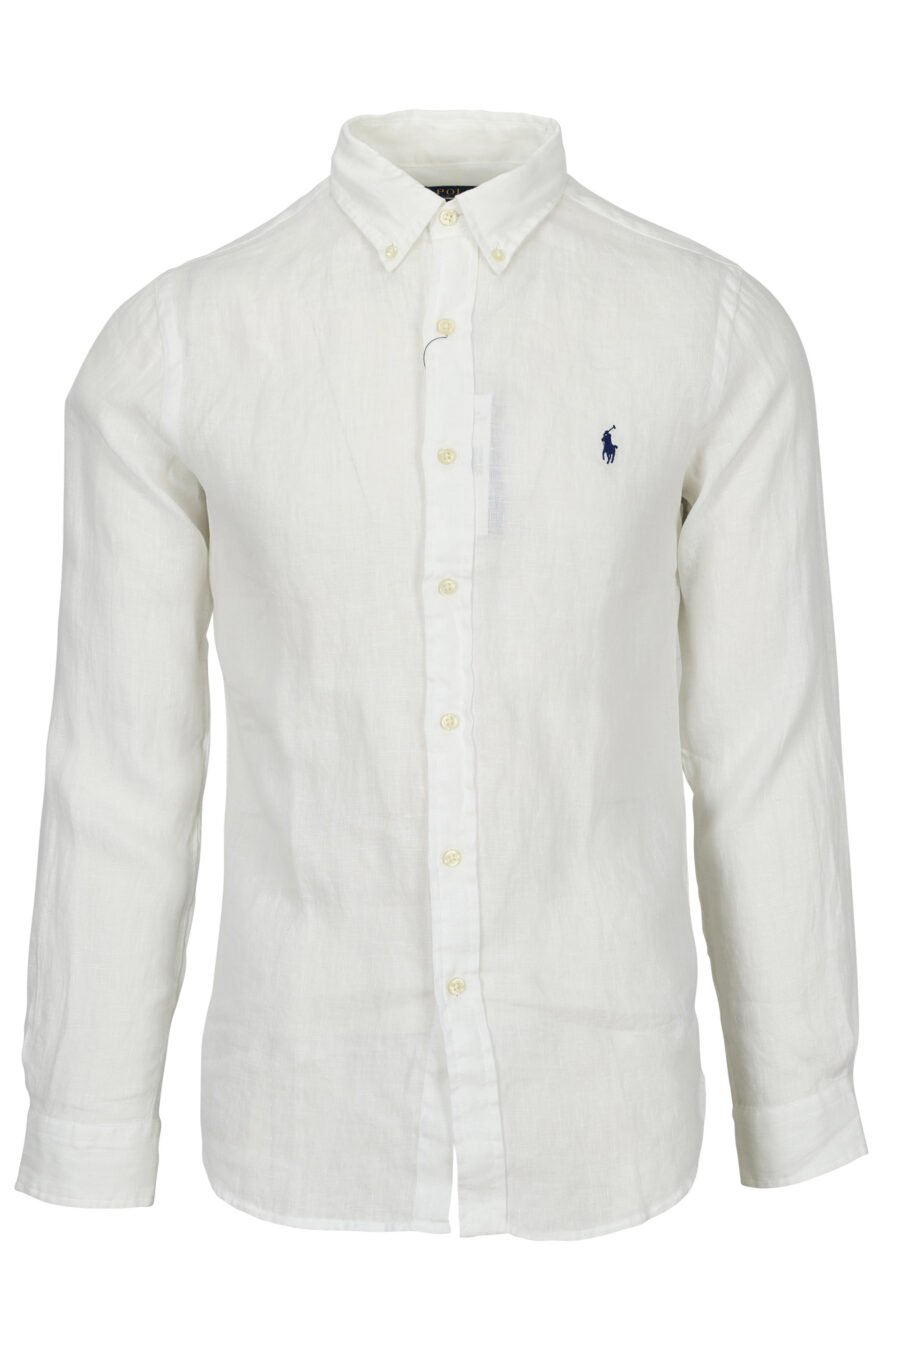 Camisa blanca con minilogo "polo" - 3616419391393